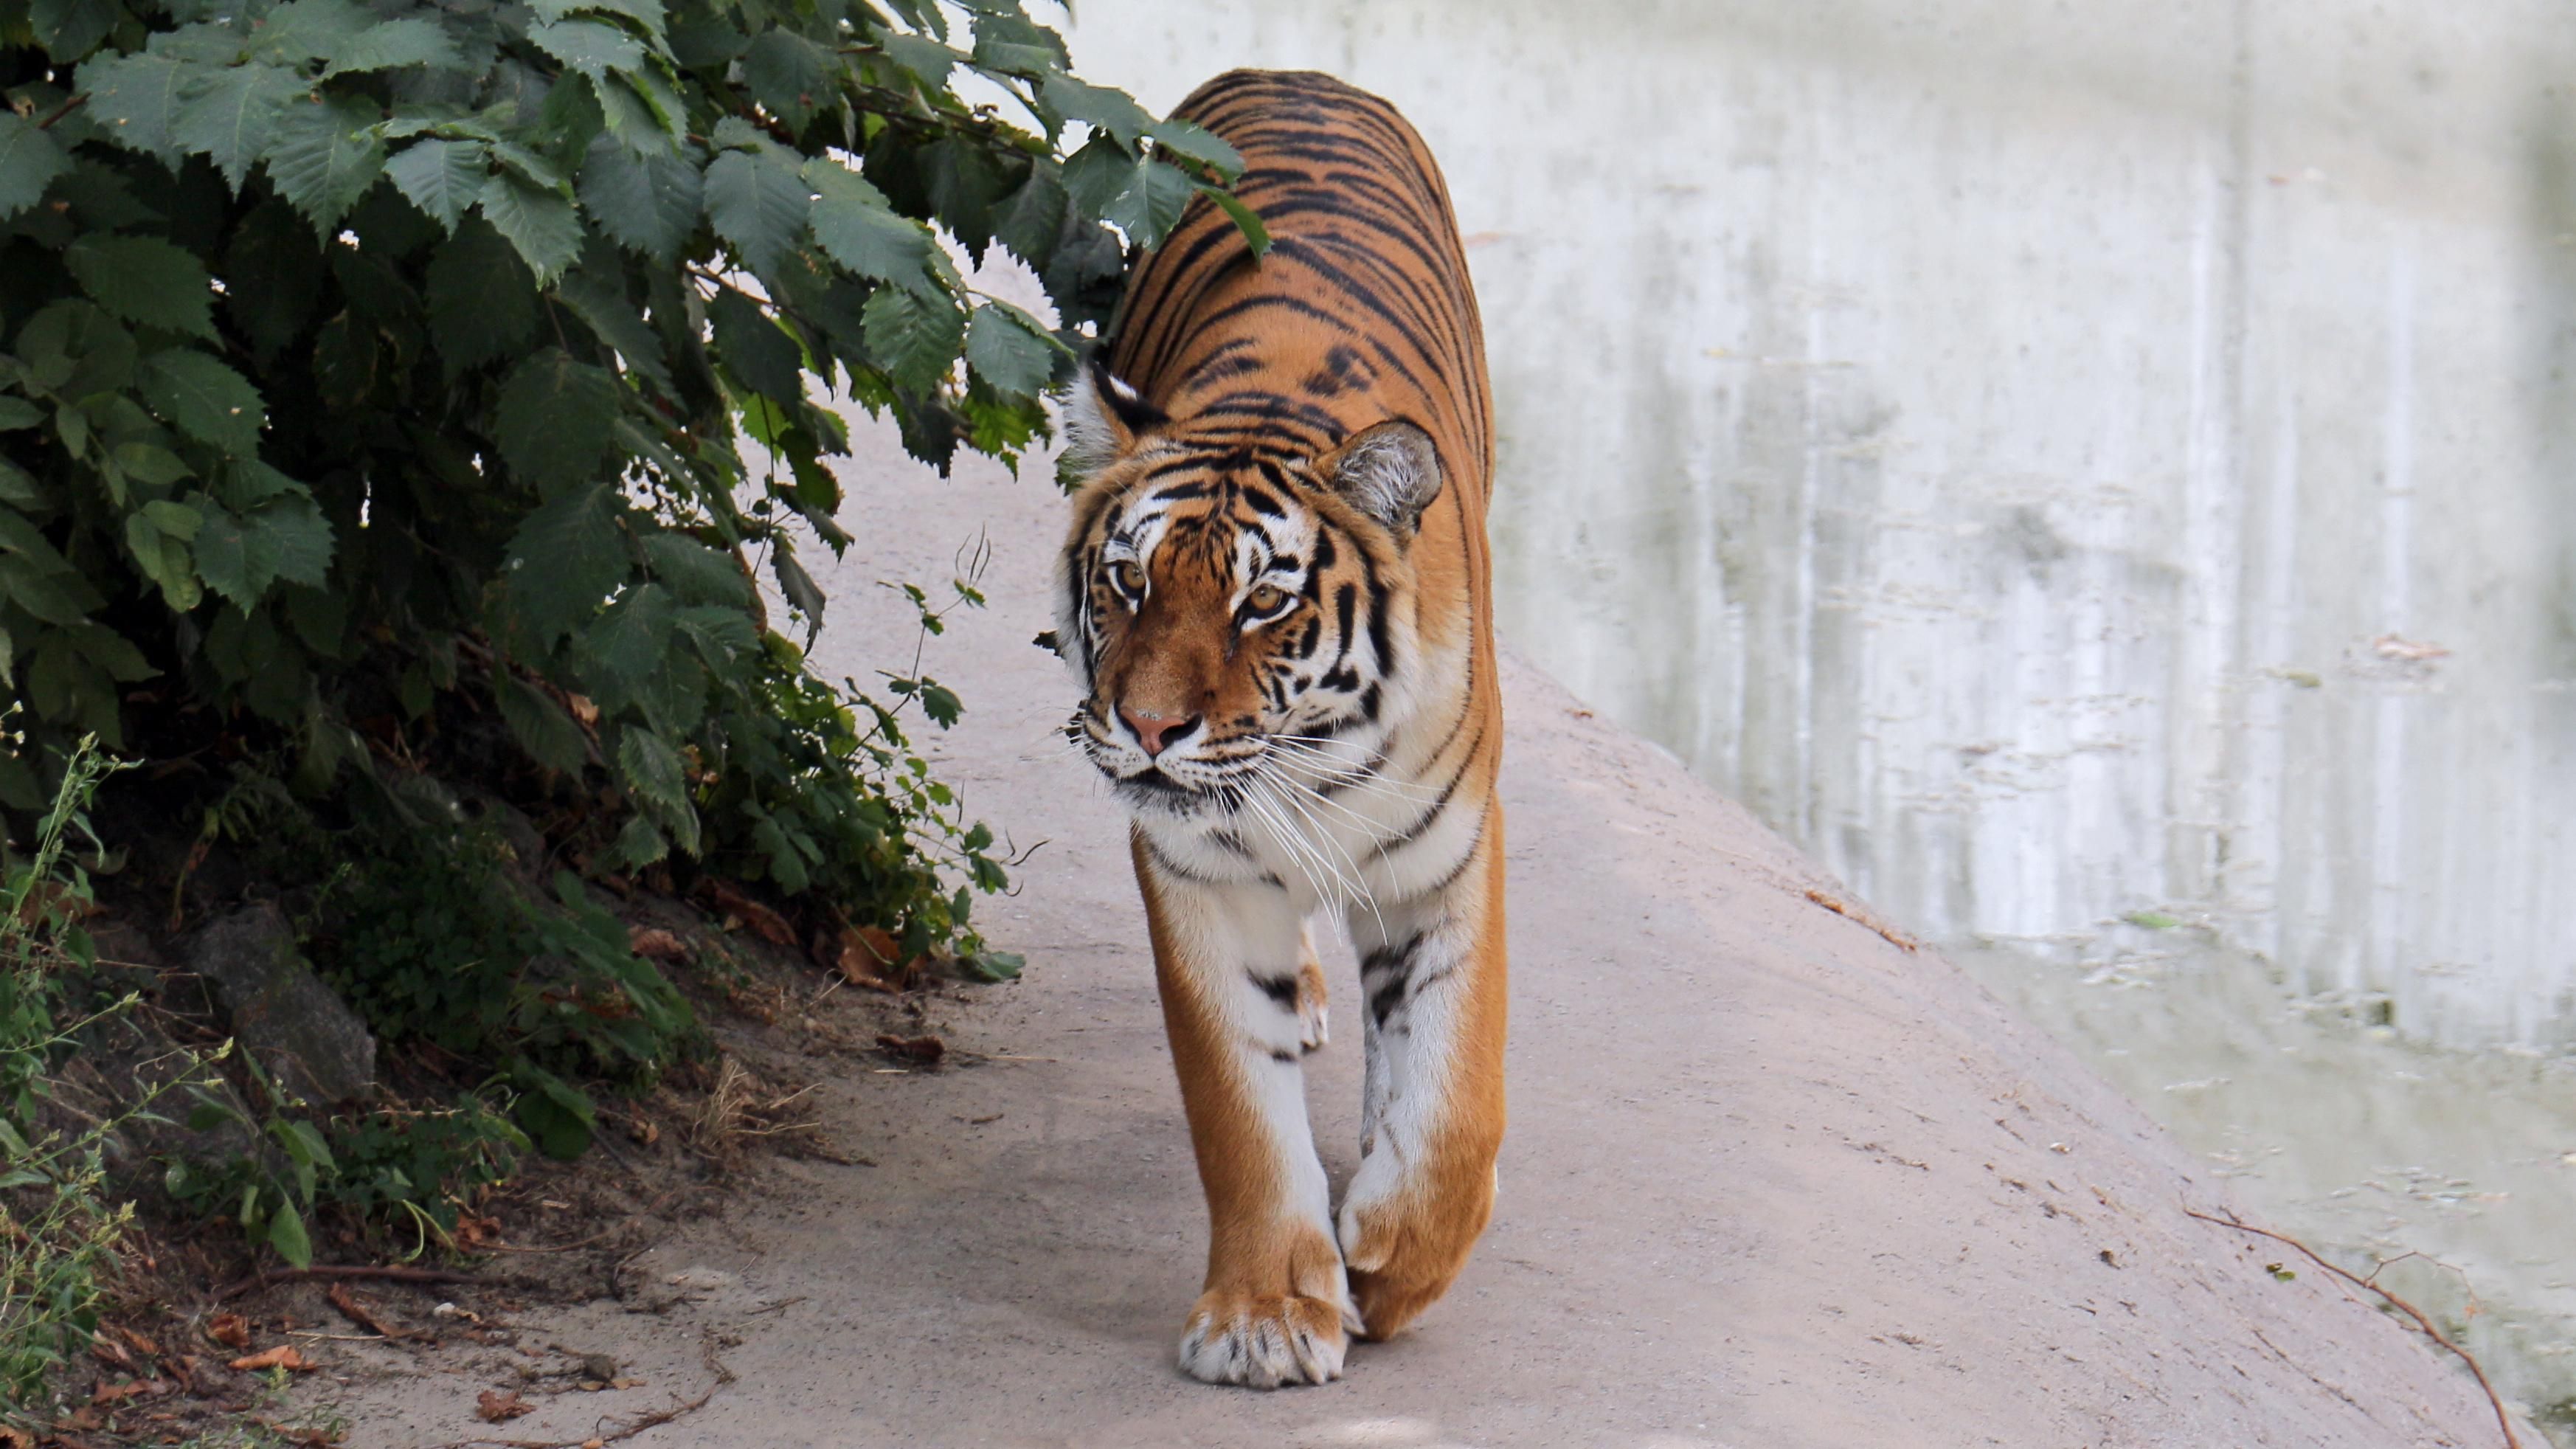 Разгневанные инвесторы зоопарка бросили осла в вольер с тиграми: шокирующее видео (18+)